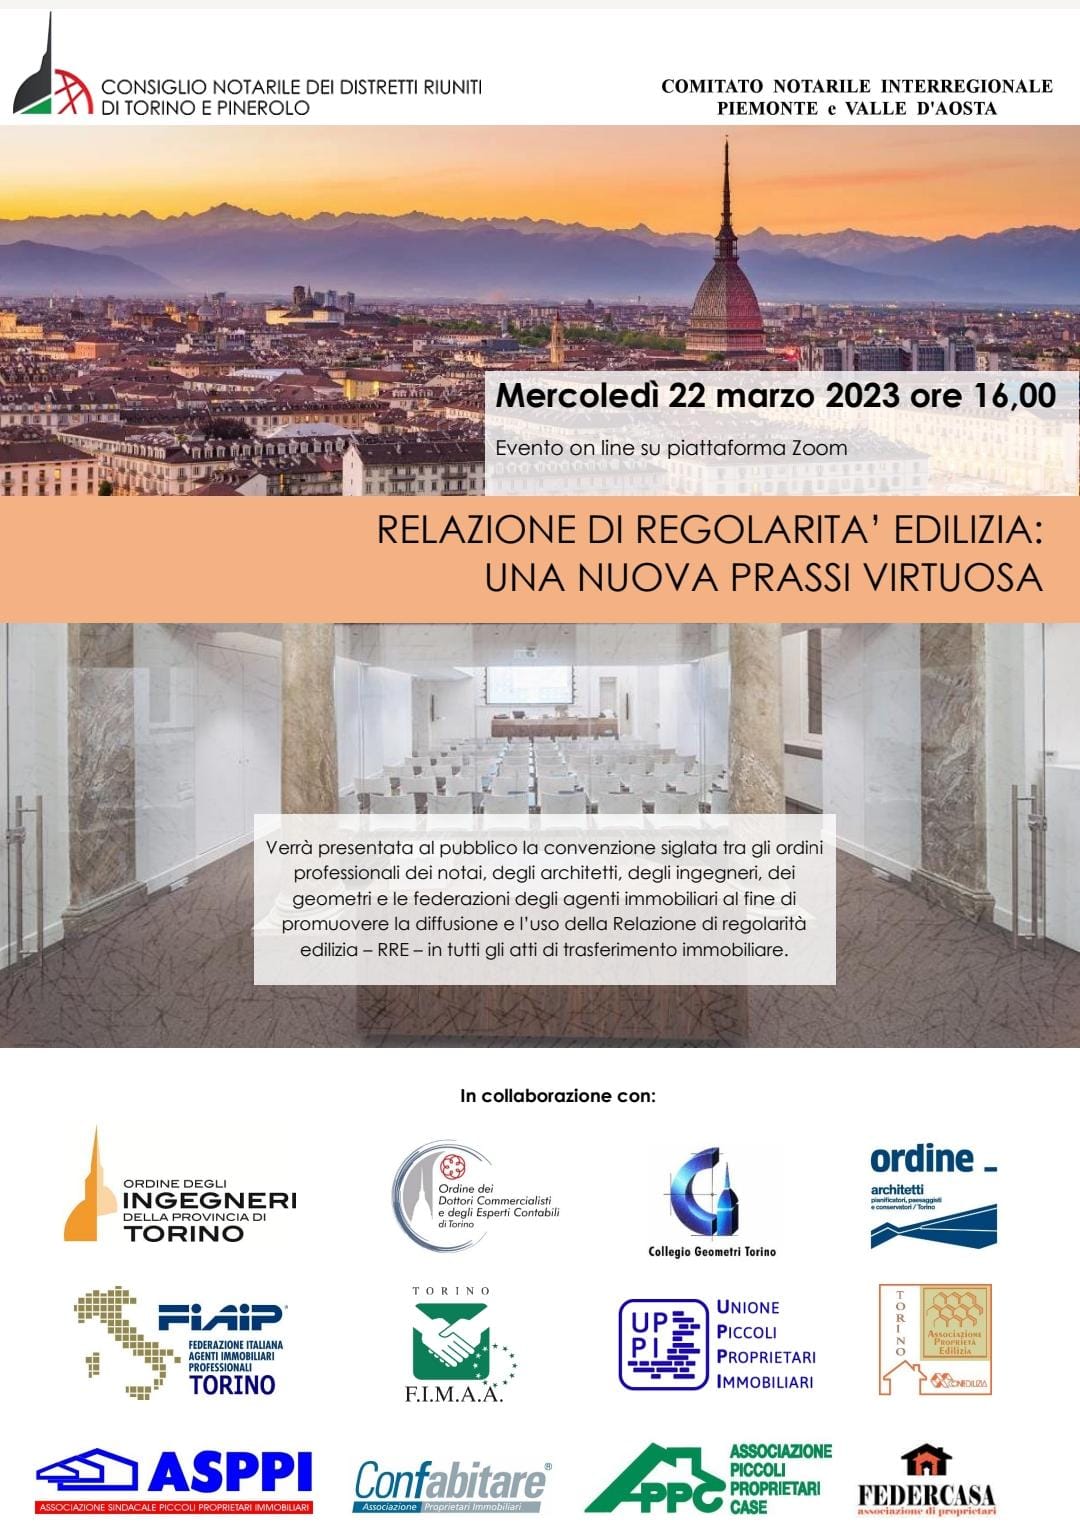 ASPPI Torino partecipa – Relazione di regolarità edilizia: una nuova prassi virtuosa